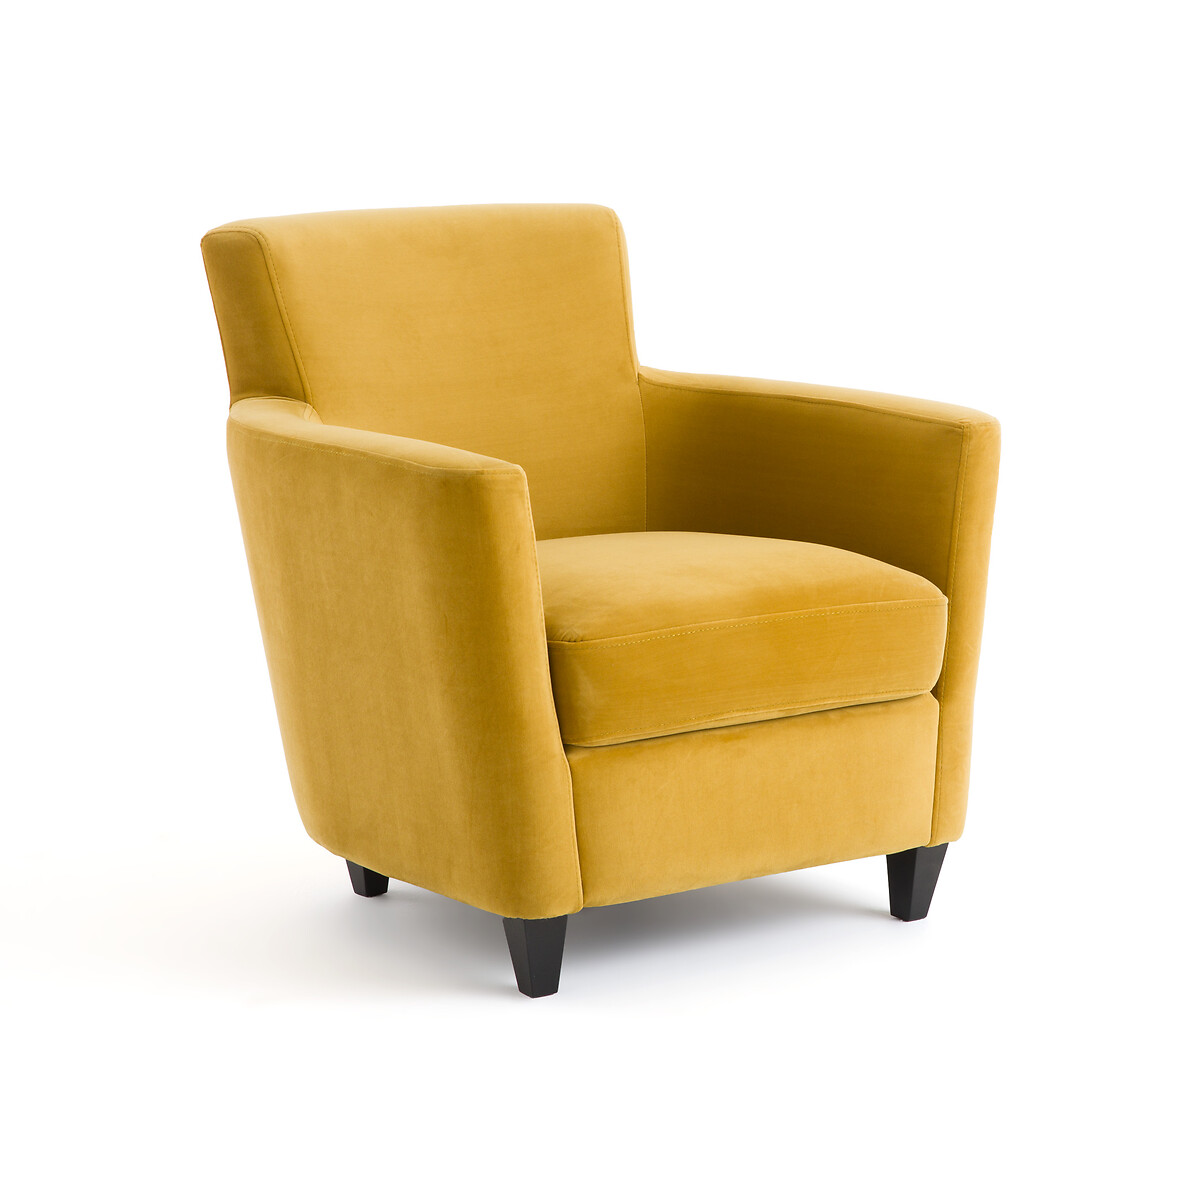 Горчичное кресло. Кресло ларедут. Кресло Сейди Velvet Yellow. Кресло желтого цвета. Кресло мягкое желтое.